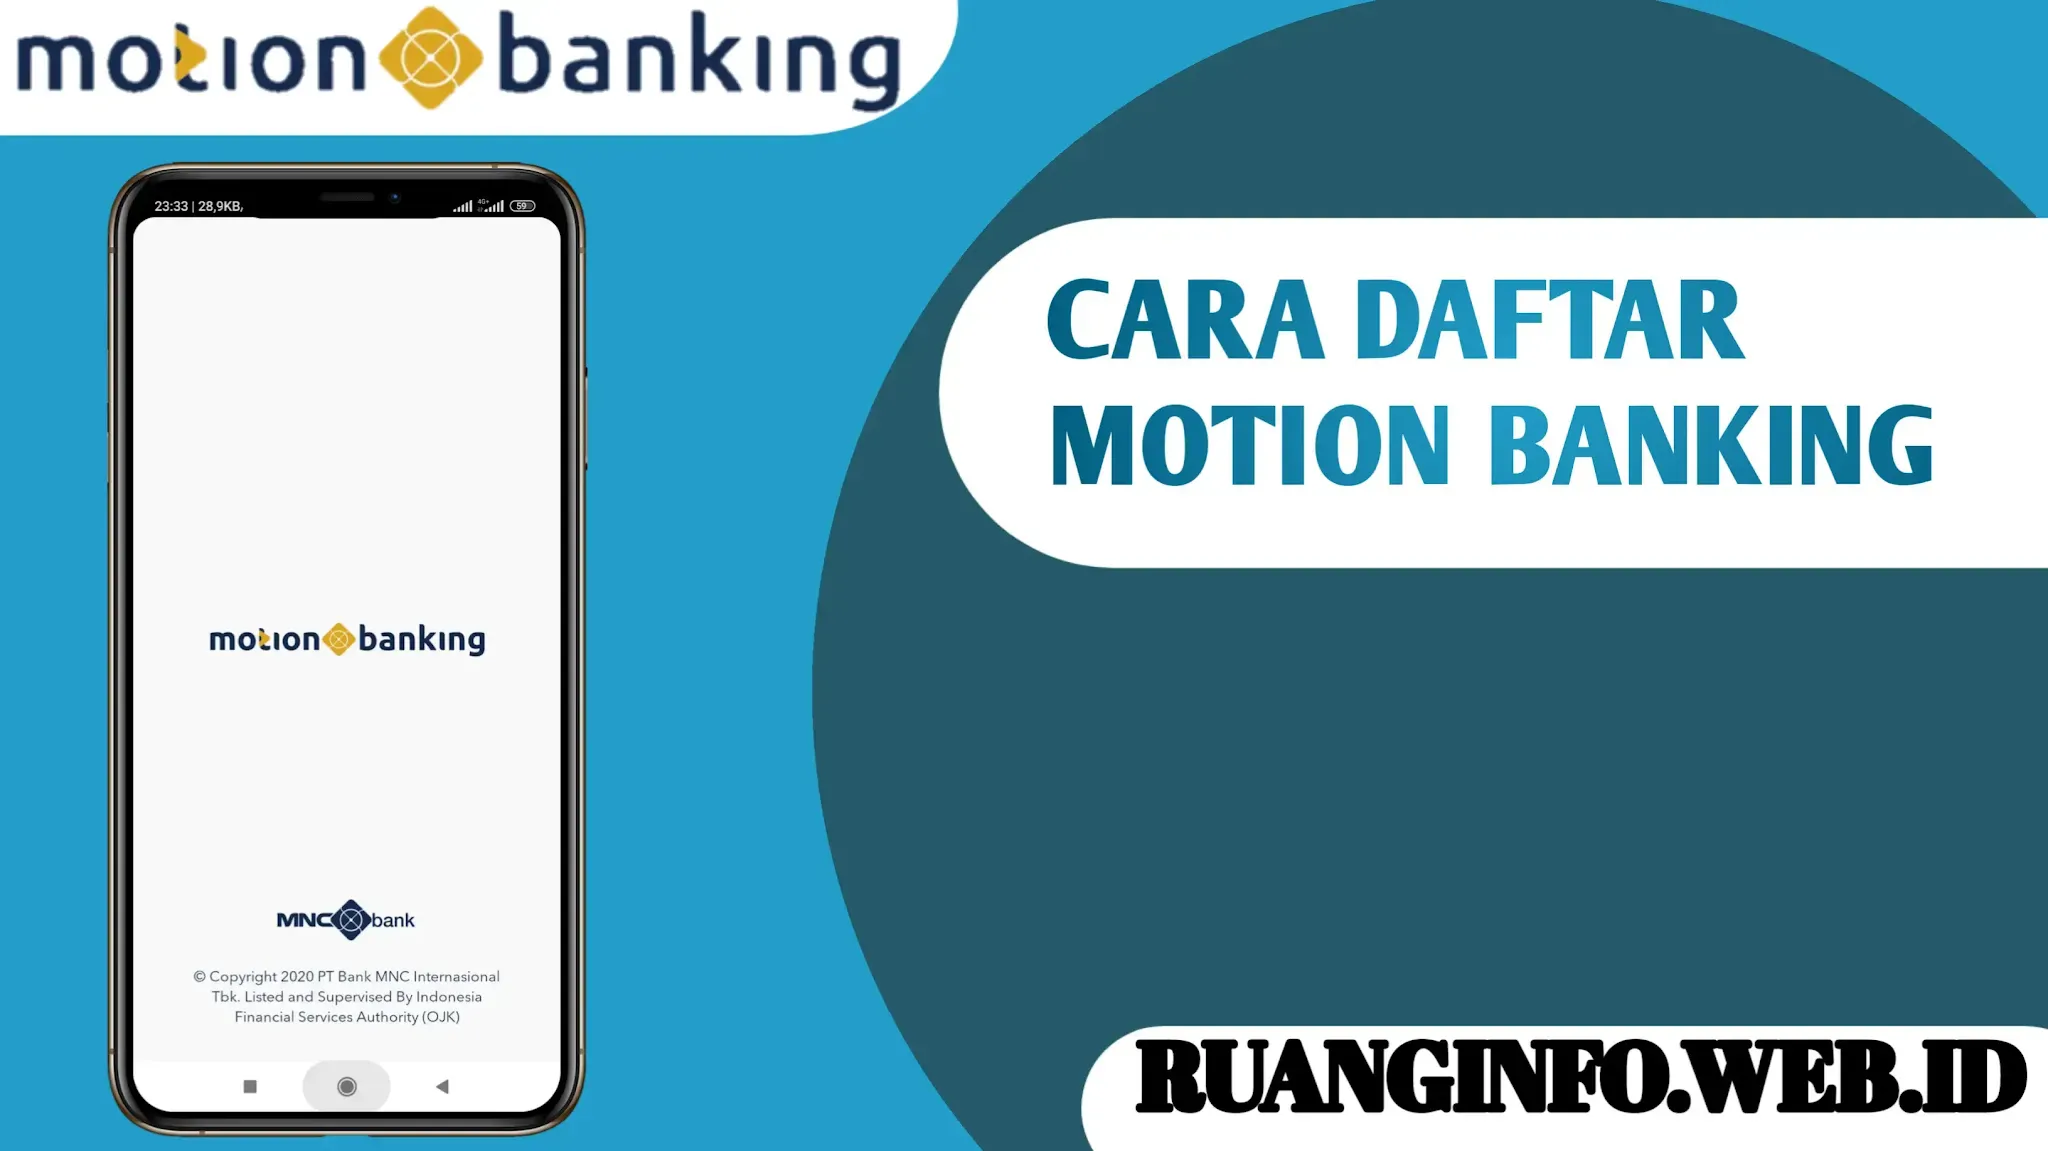 Cara daftar motion banking secara online melalui smartphone berikut ini panduan lengkap cara daftar motion banking gunakan kode berikut ini👉01SUWPL31